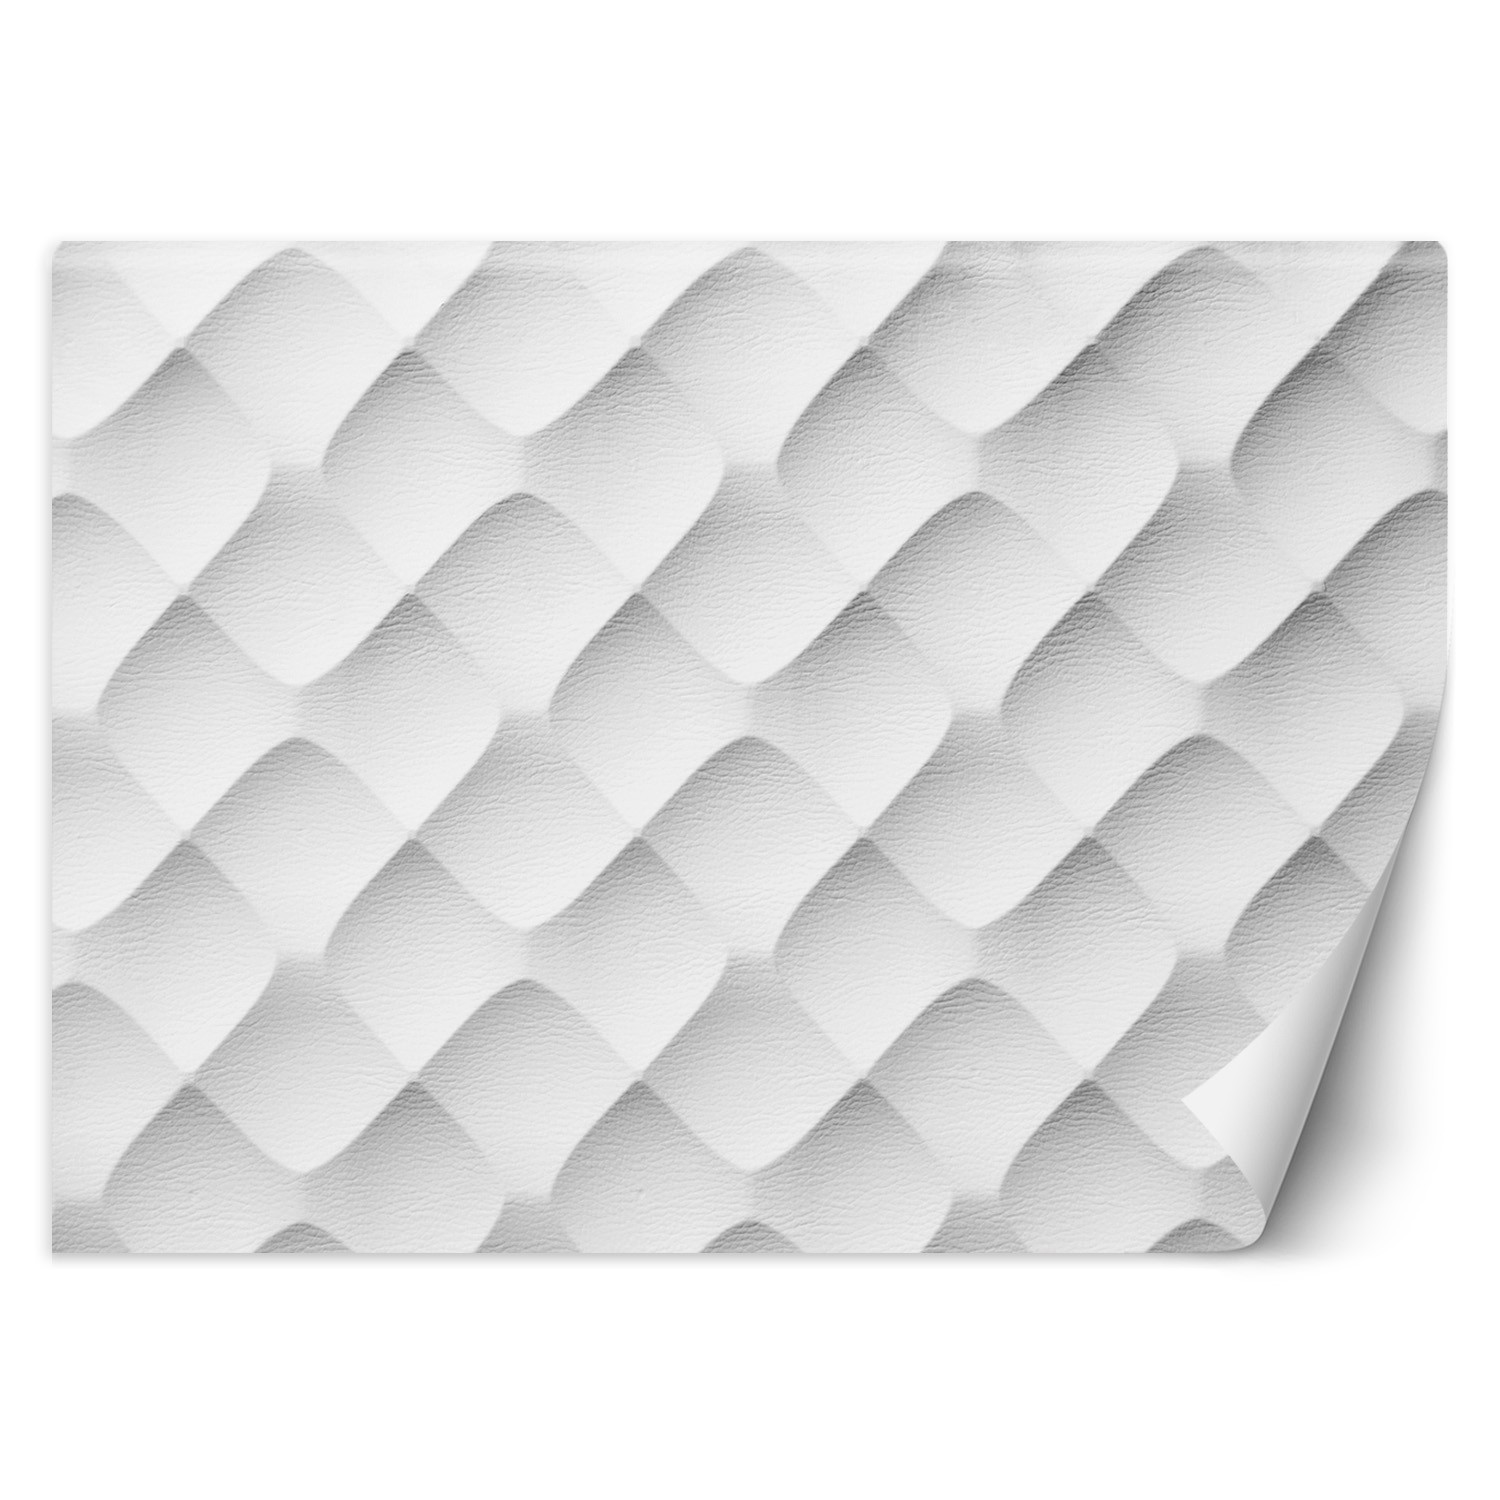 Trend24 – Behang – Abstract Patroon – Behangpapier – Fotobehang 3D – Behang Woonkamer – 450x315x2 cm – Incl. behanglijm